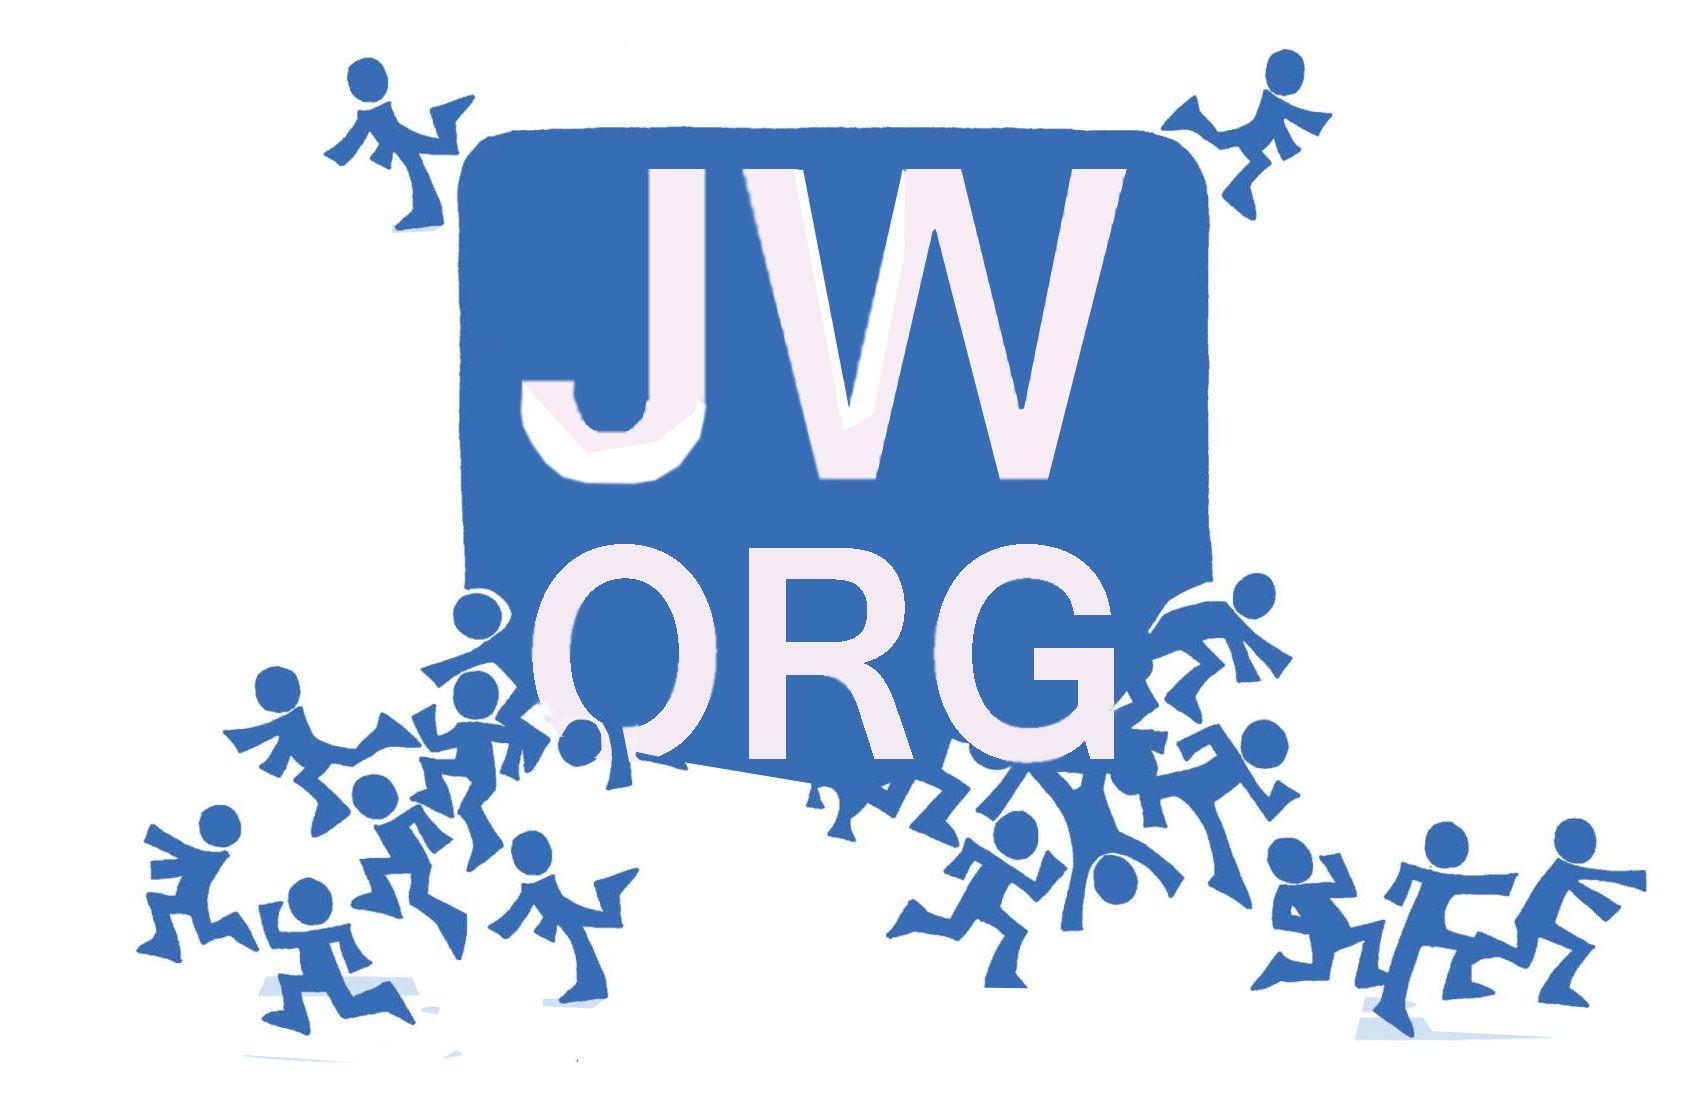 Logos org. JW. JW лого. JW org. Собрание JW лого.